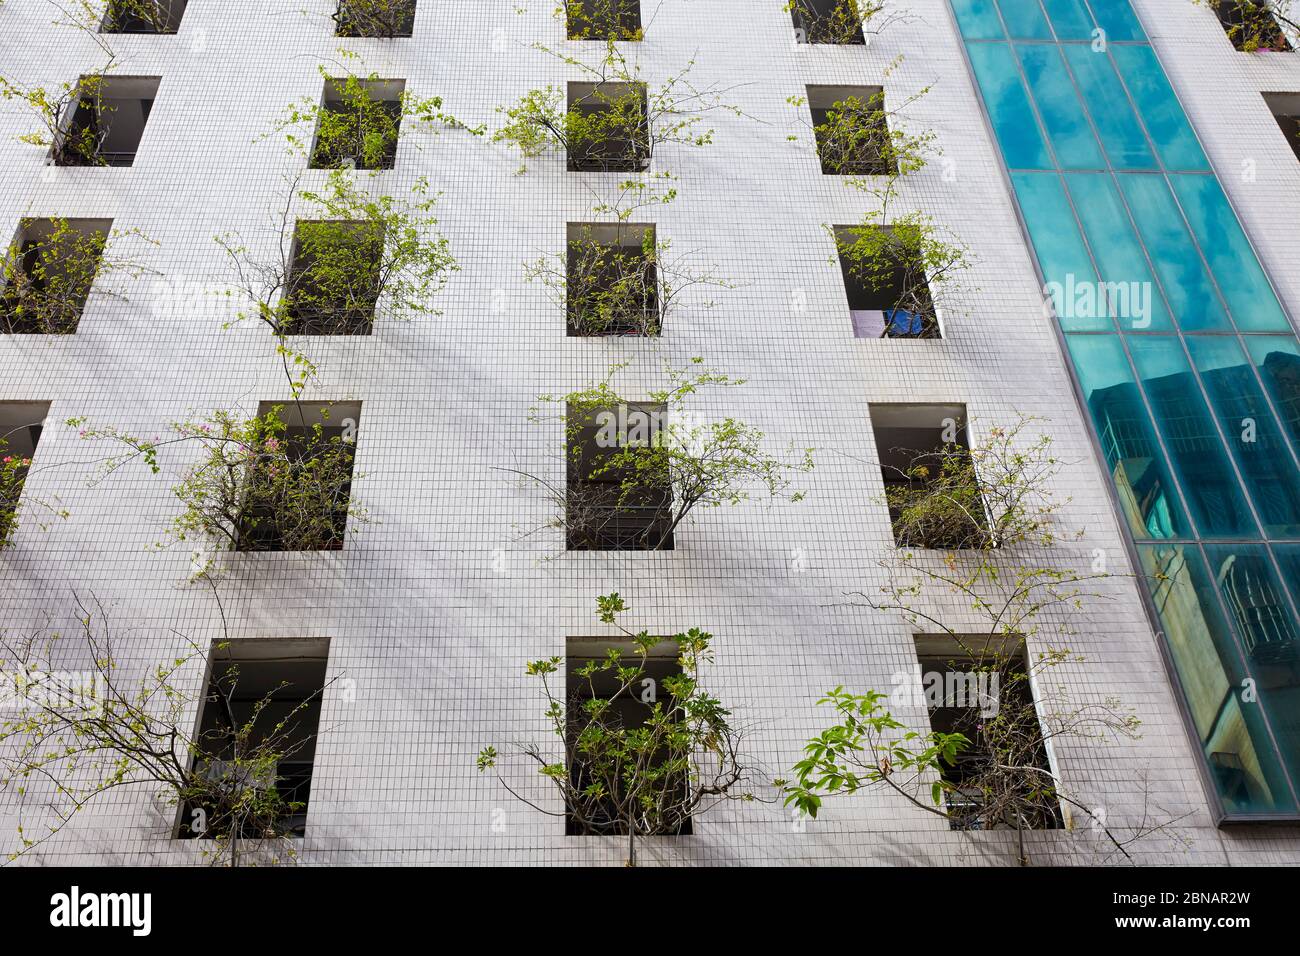 Lebende Bäume wachsen aus den Fenstern eines modernen mehrstöckigen Gebäudes. Macau, China. Stockfoto